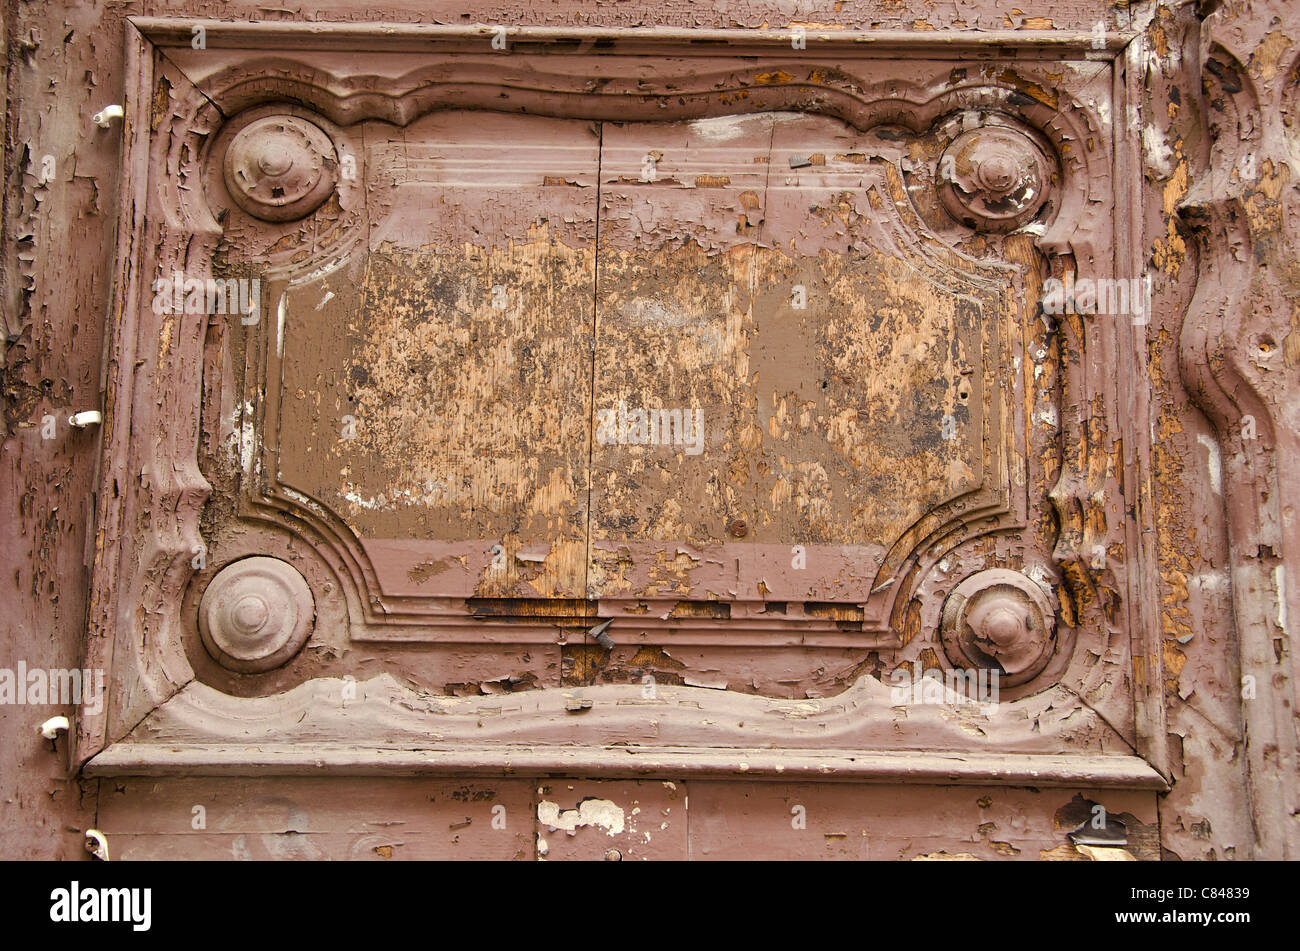 Vieille porte en bois, fragment. Des ornements architecturaux et décortiquées de la peinture. Banque D'Images